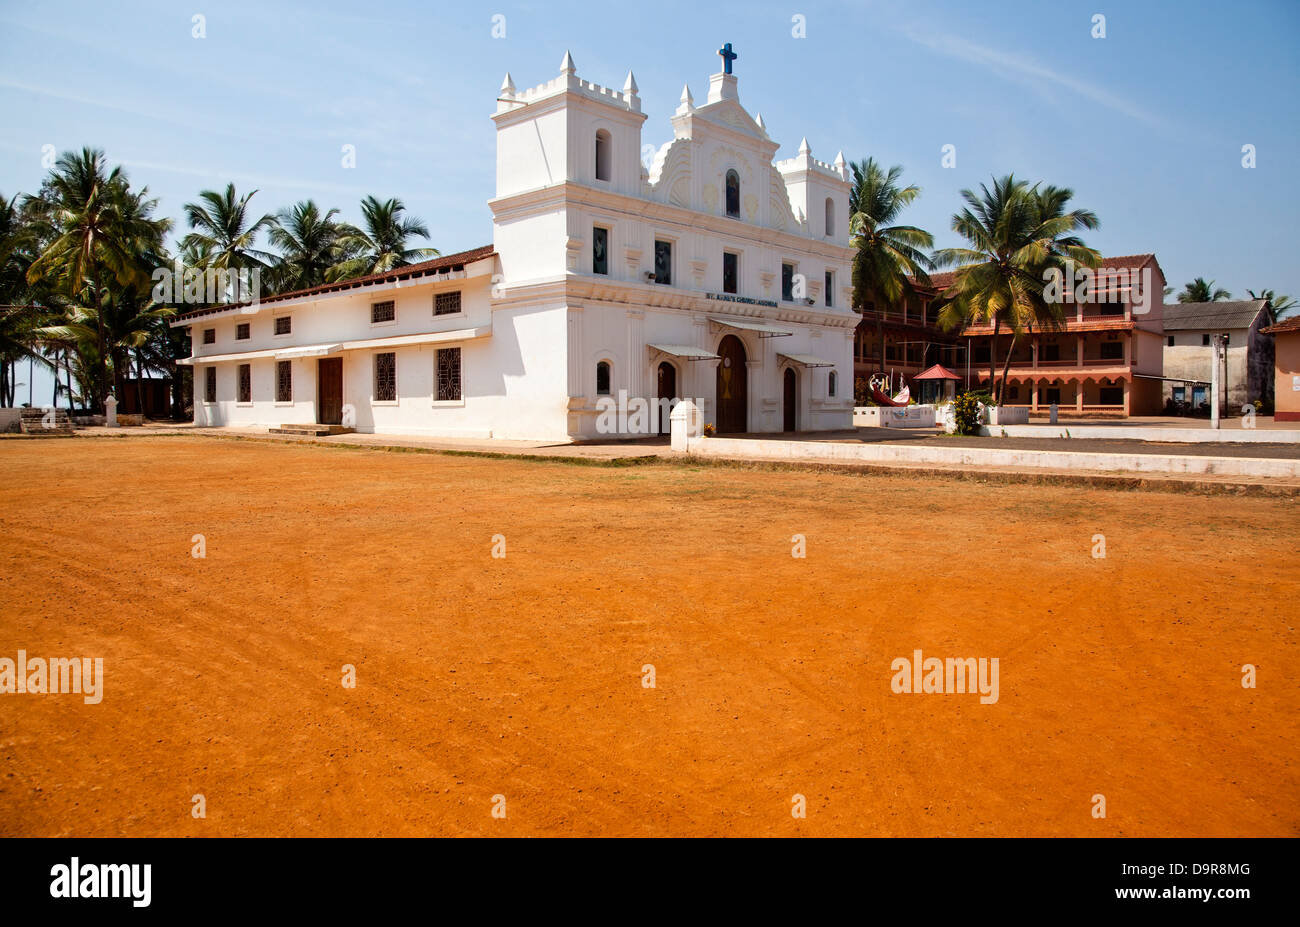 Facade of a church, Goa, India Stock Photo